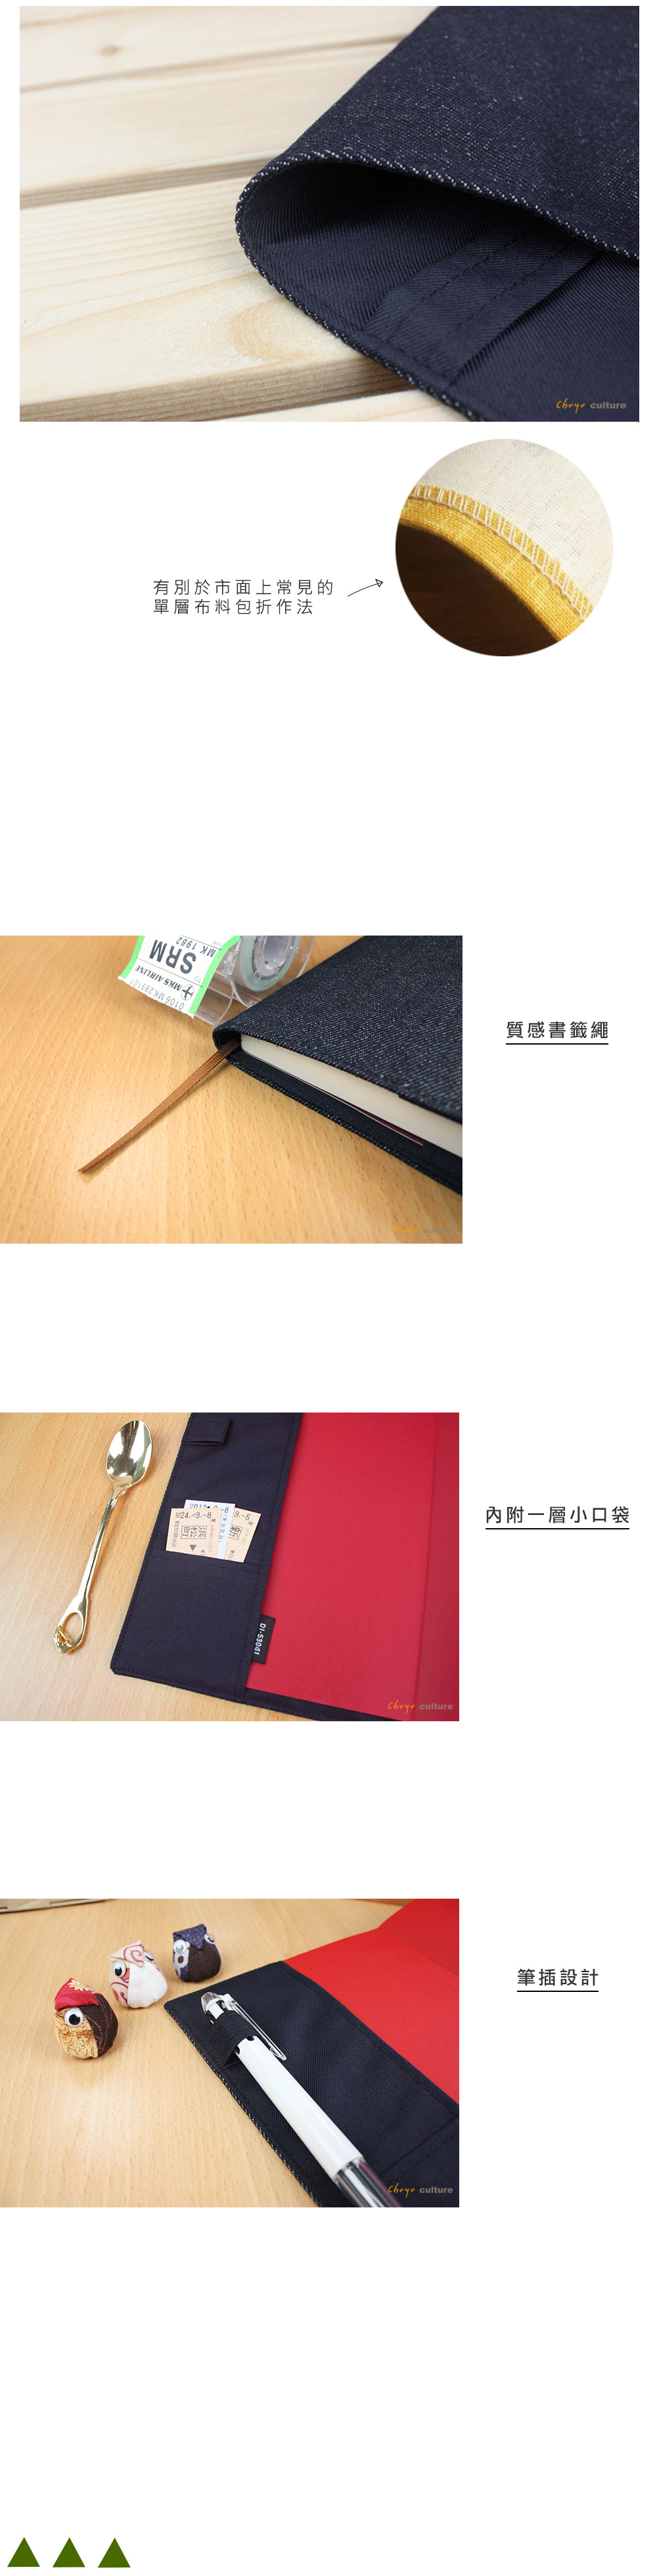 Clear Rectangle Penc Case/Pencil Bag/Transparent Pouch